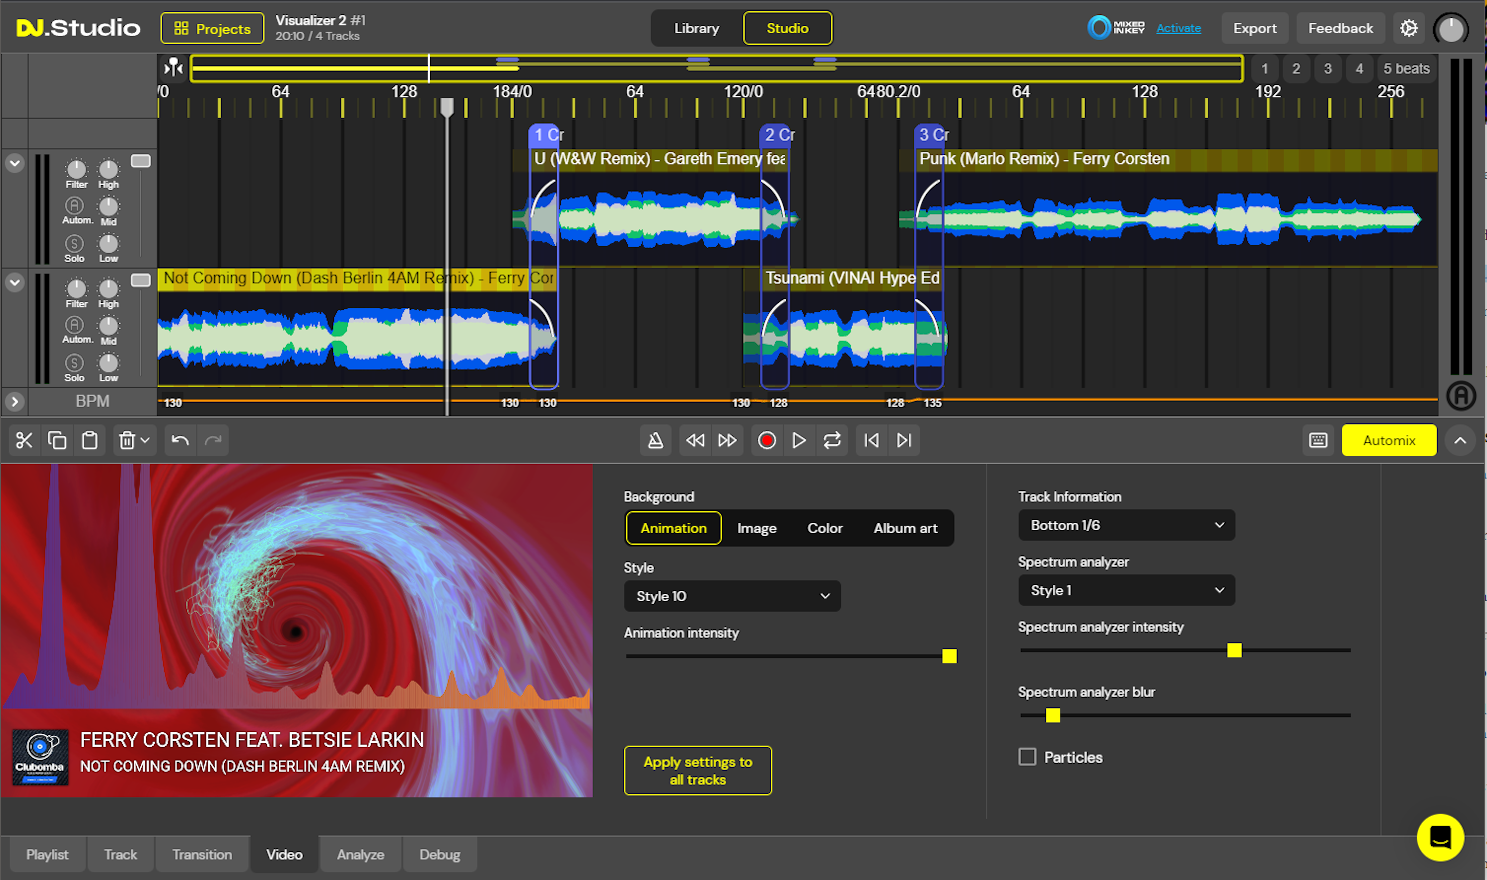 DJ.Studio Visualizer Interface